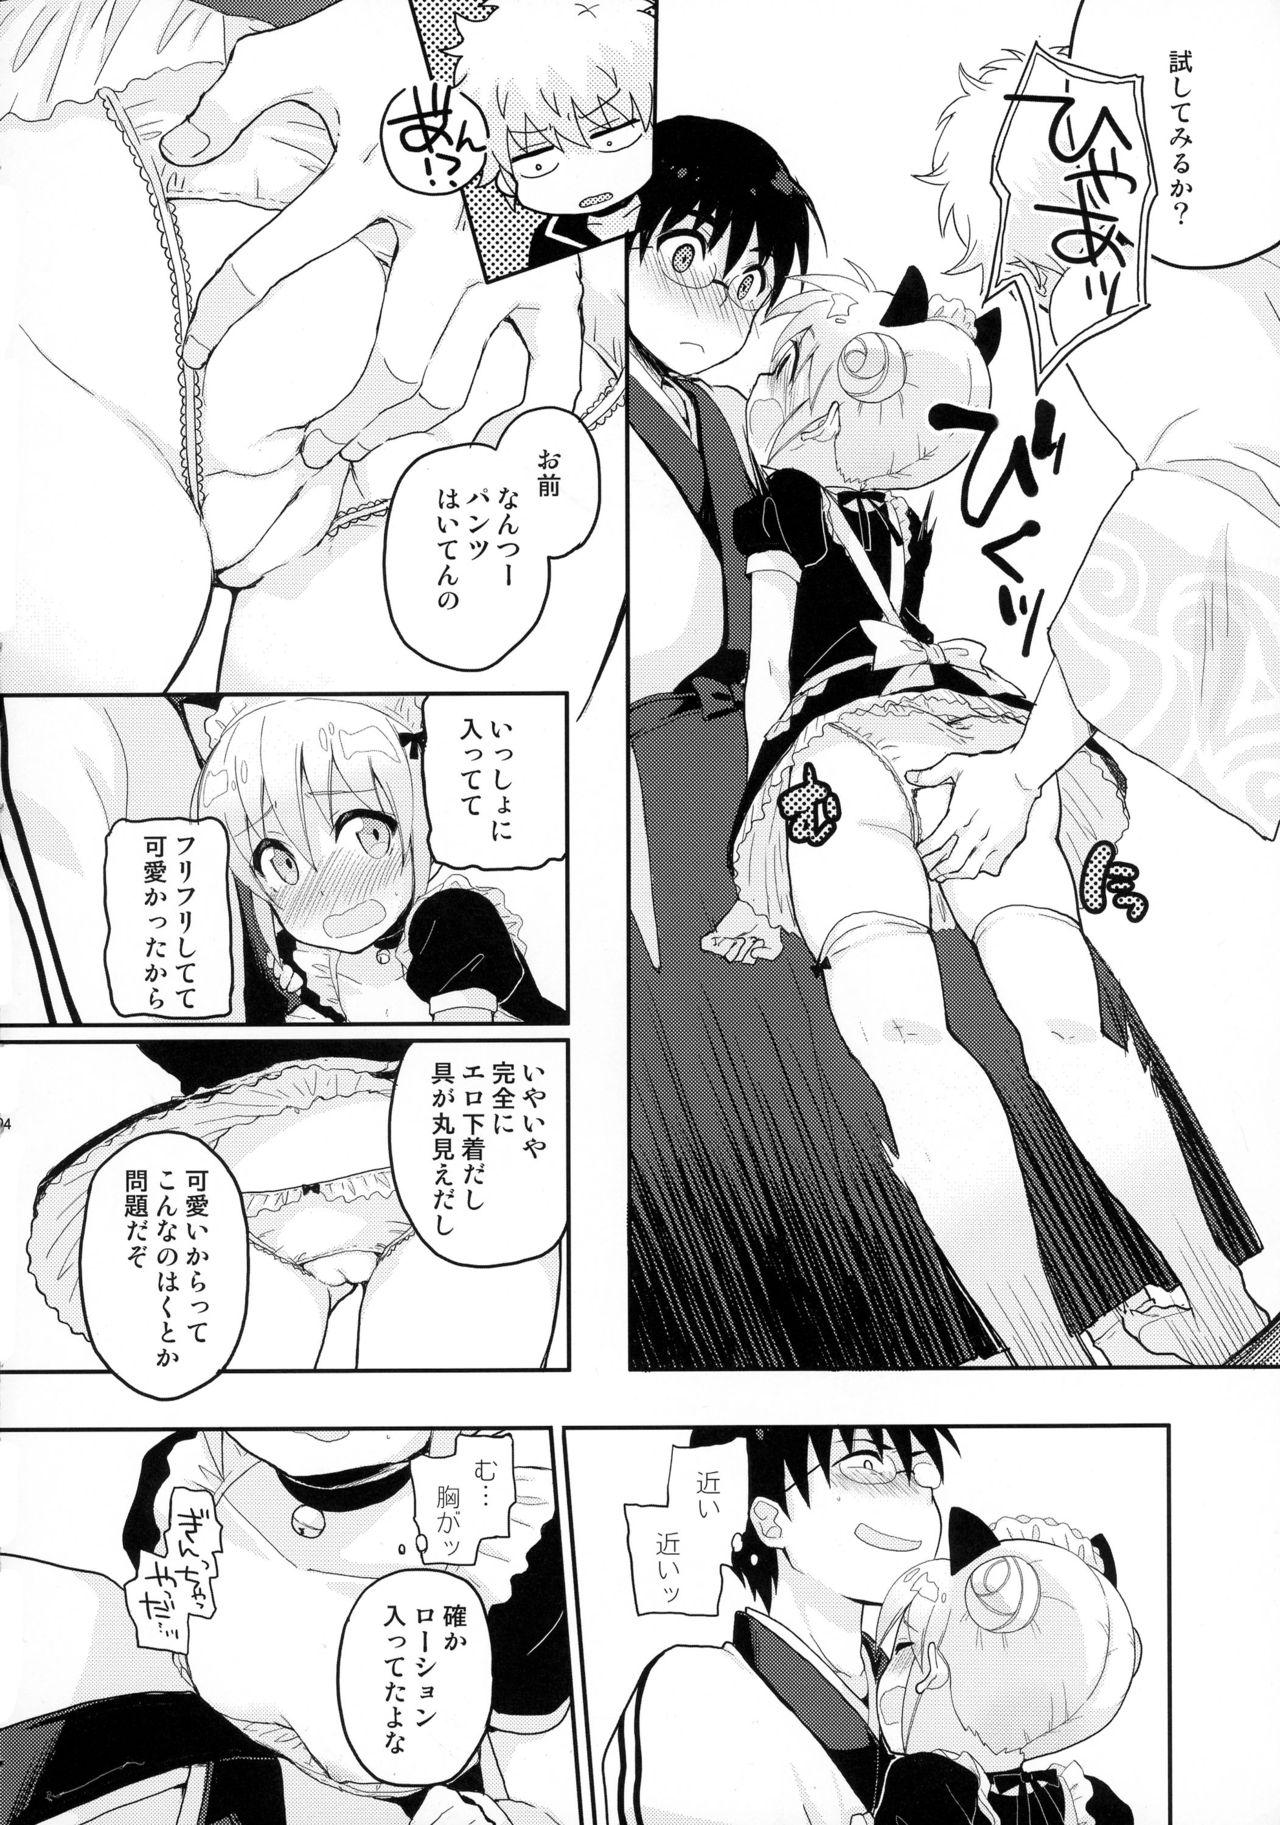 Orgia SK - Gintama Parody - Page 6